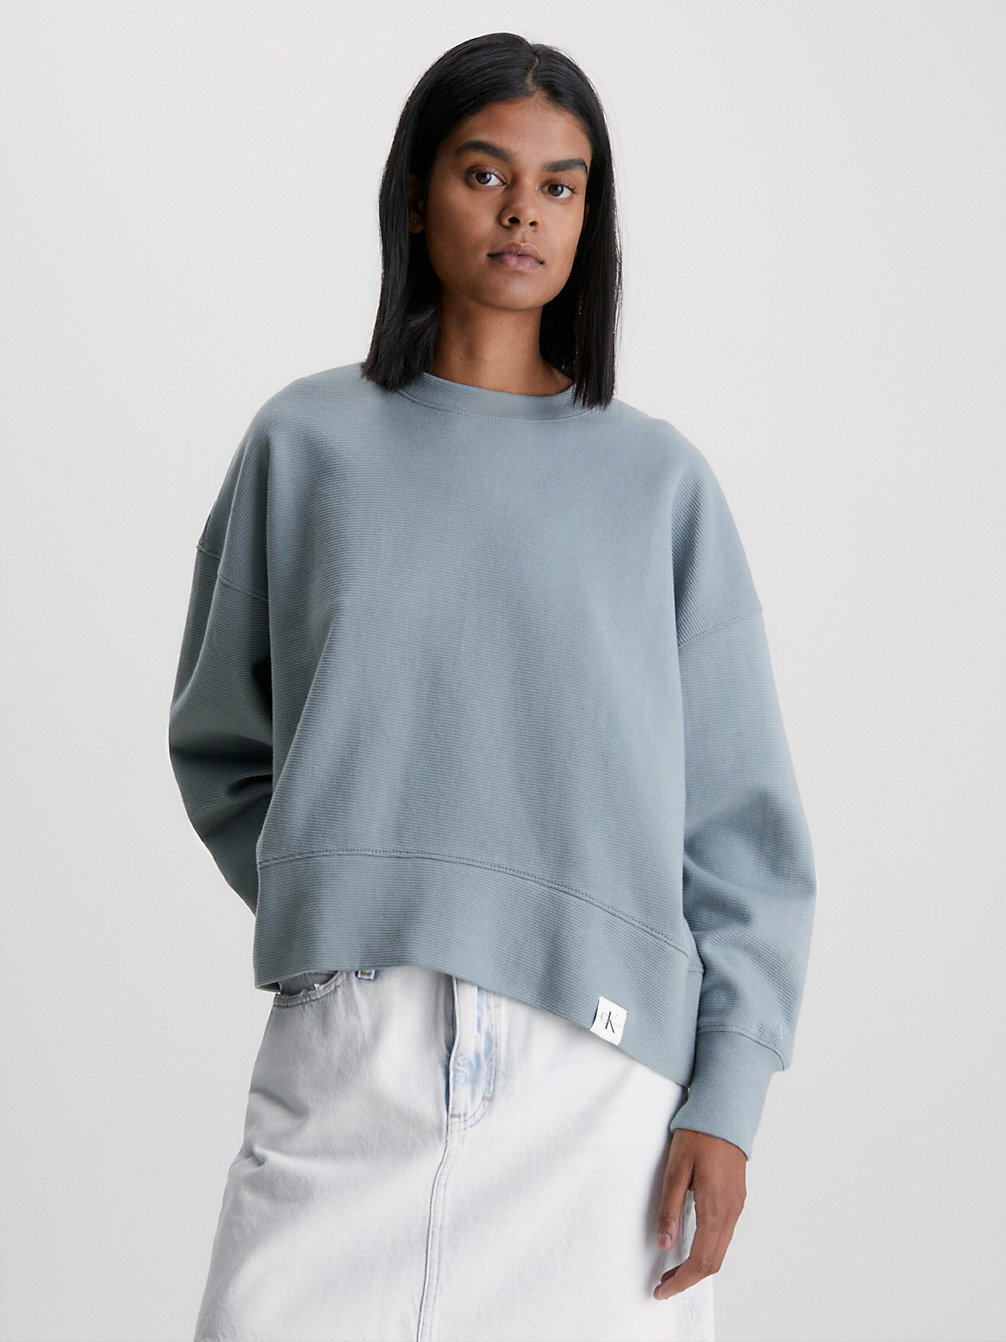 OVERCAST GREY > Lässige, Gerippte Ottoman Sweatshirt > undefined Damen - Calvin Klein